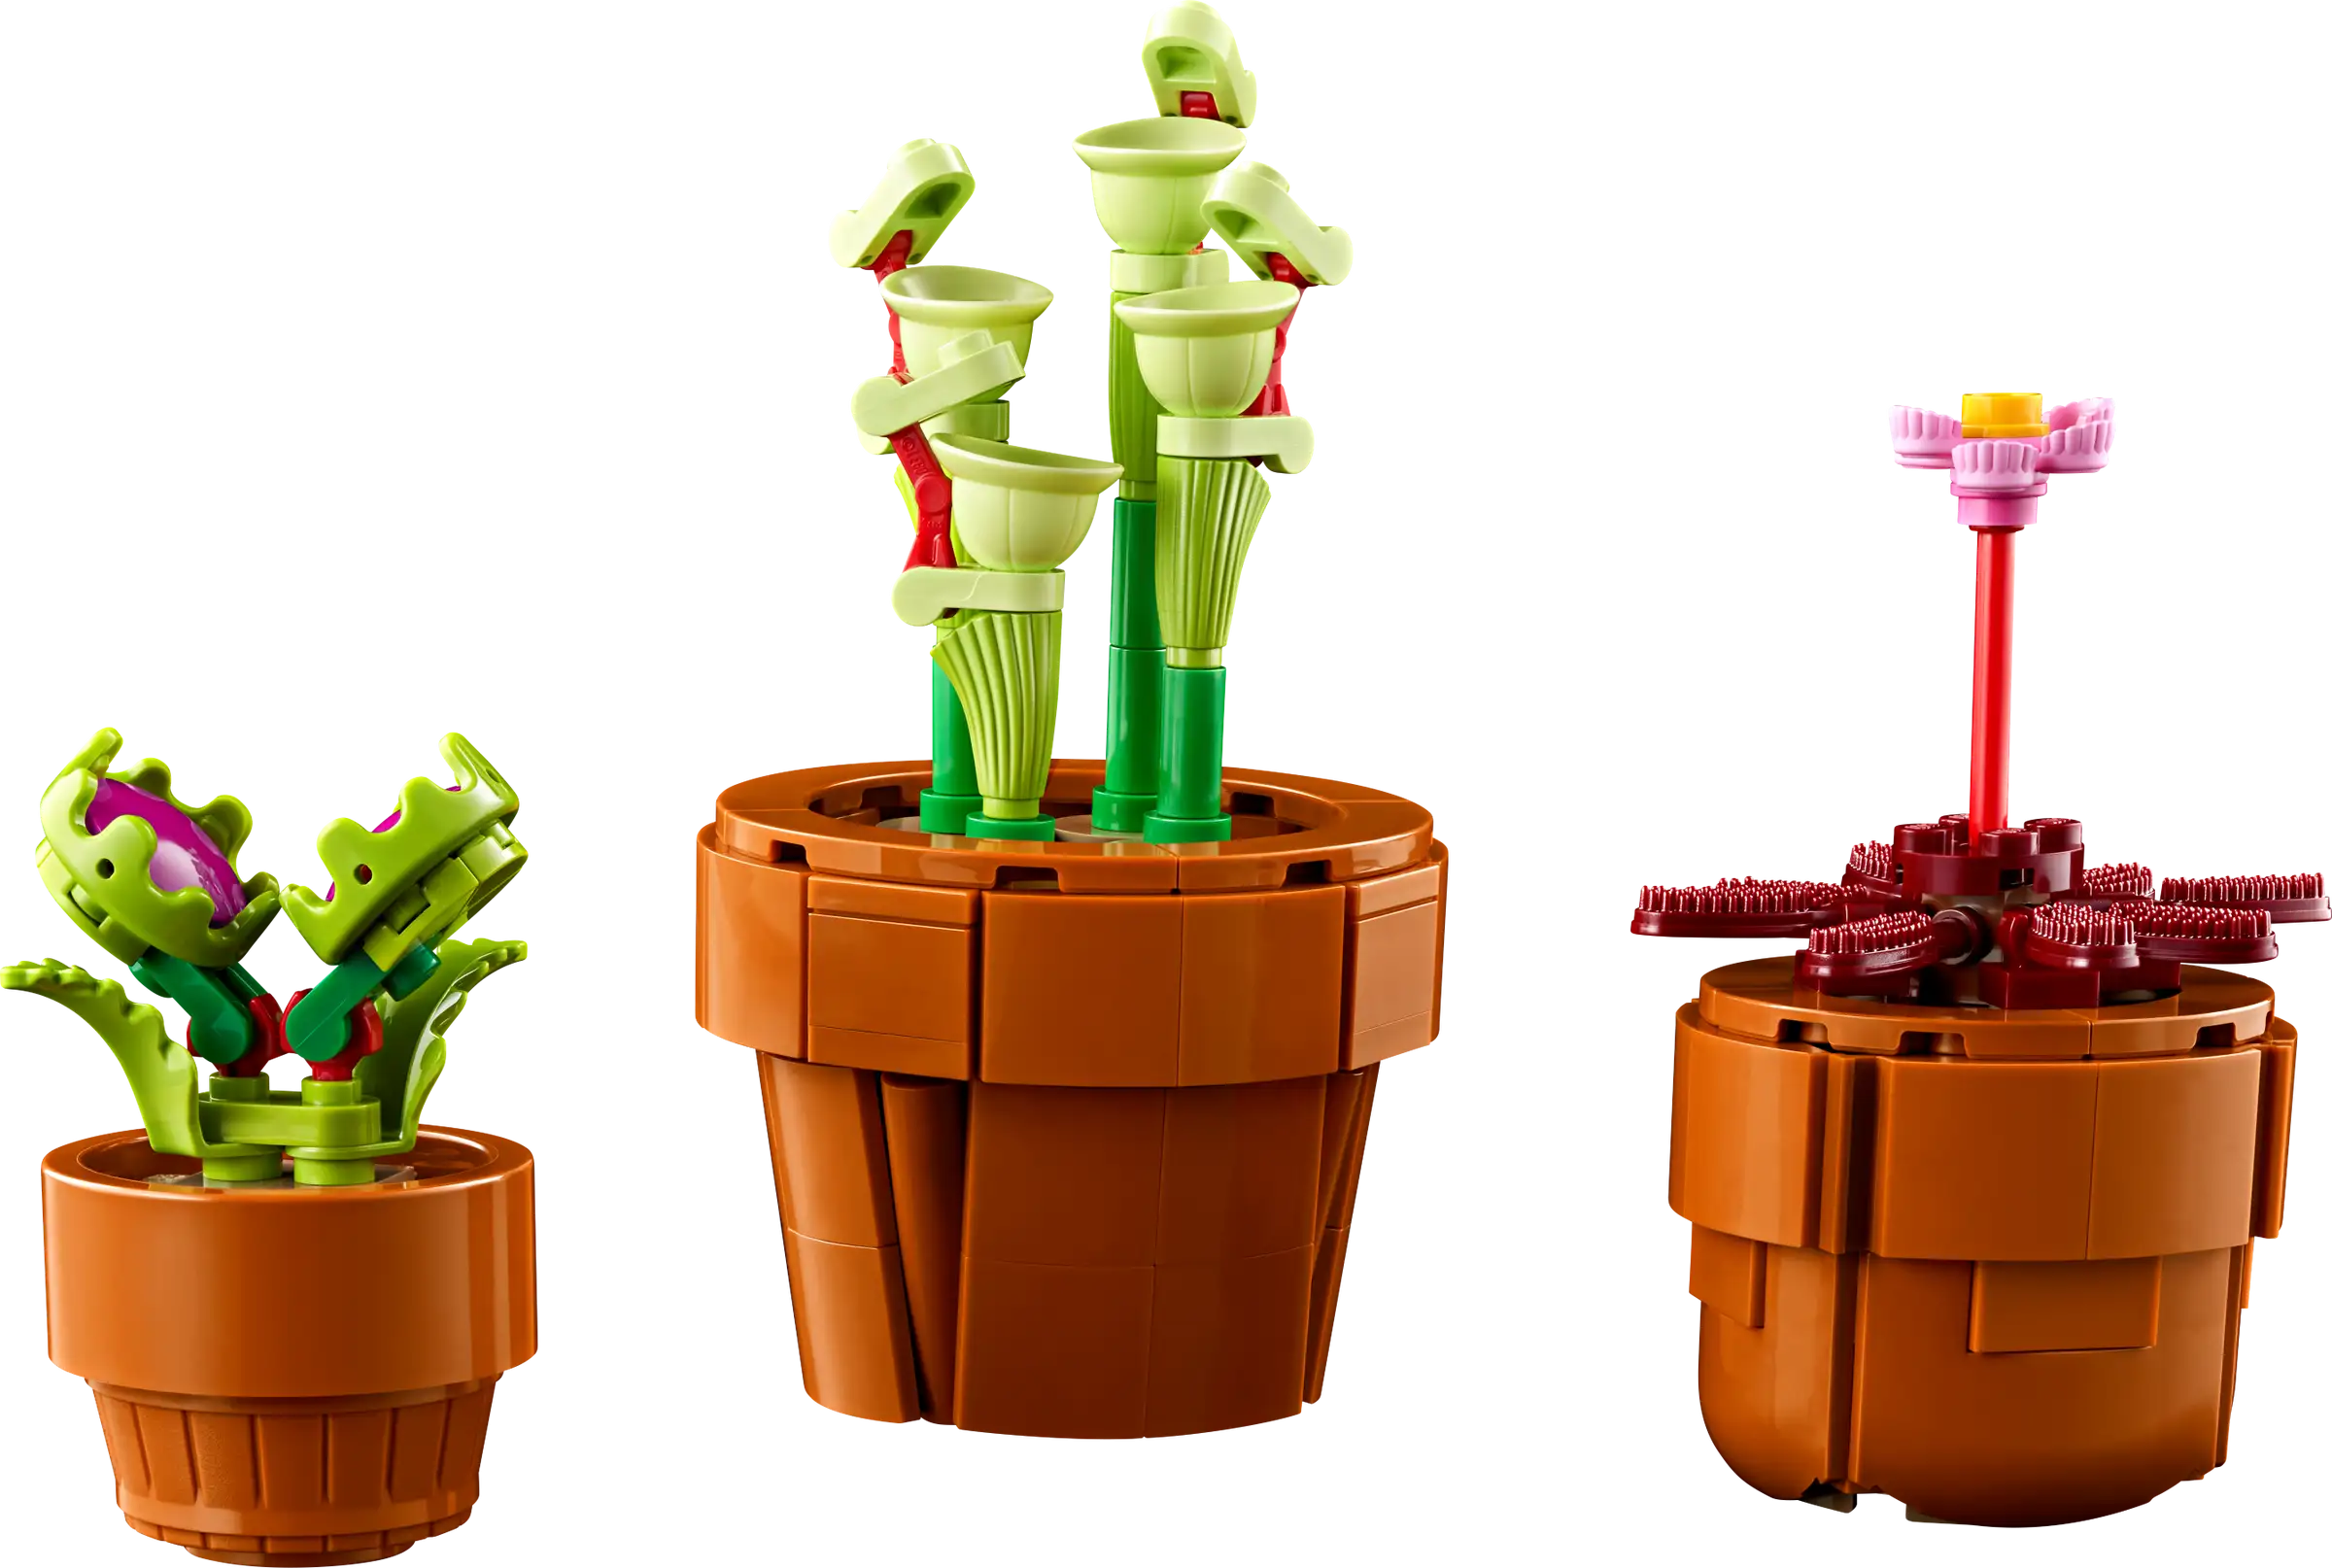 Đồ Chơi Lắp Ráp Bộ Sưu Tập Hoa Xương Rồng - Miniplantjes - Lego Adults 10329 (758 Mảnh Ghép)